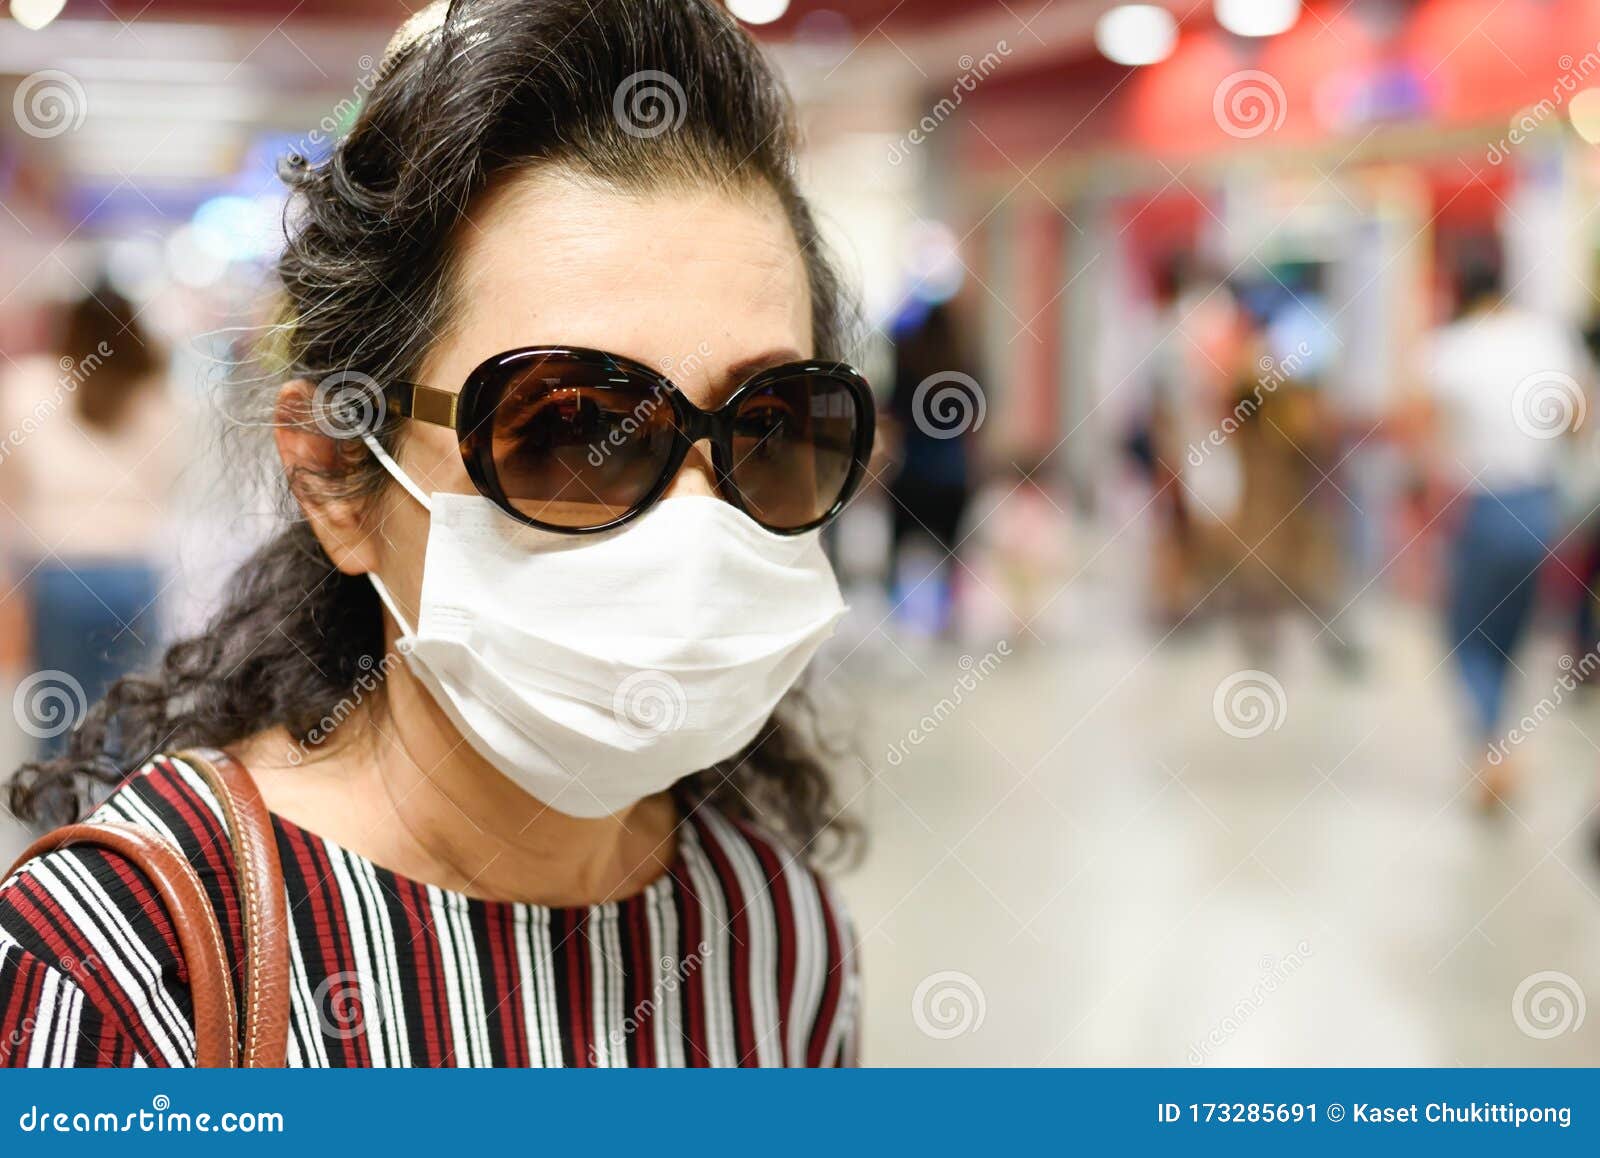 https://thumbs.dreamstime.com/z/vieja-con-m%C3%A1scara-facial-y-gafas-de-sol-mujeres-m%C3%A1scaras-para-prevenir-la-infecci%C3%B3n-por-el-coronavirus-caminan-en-metro-gente-173285691.jpg